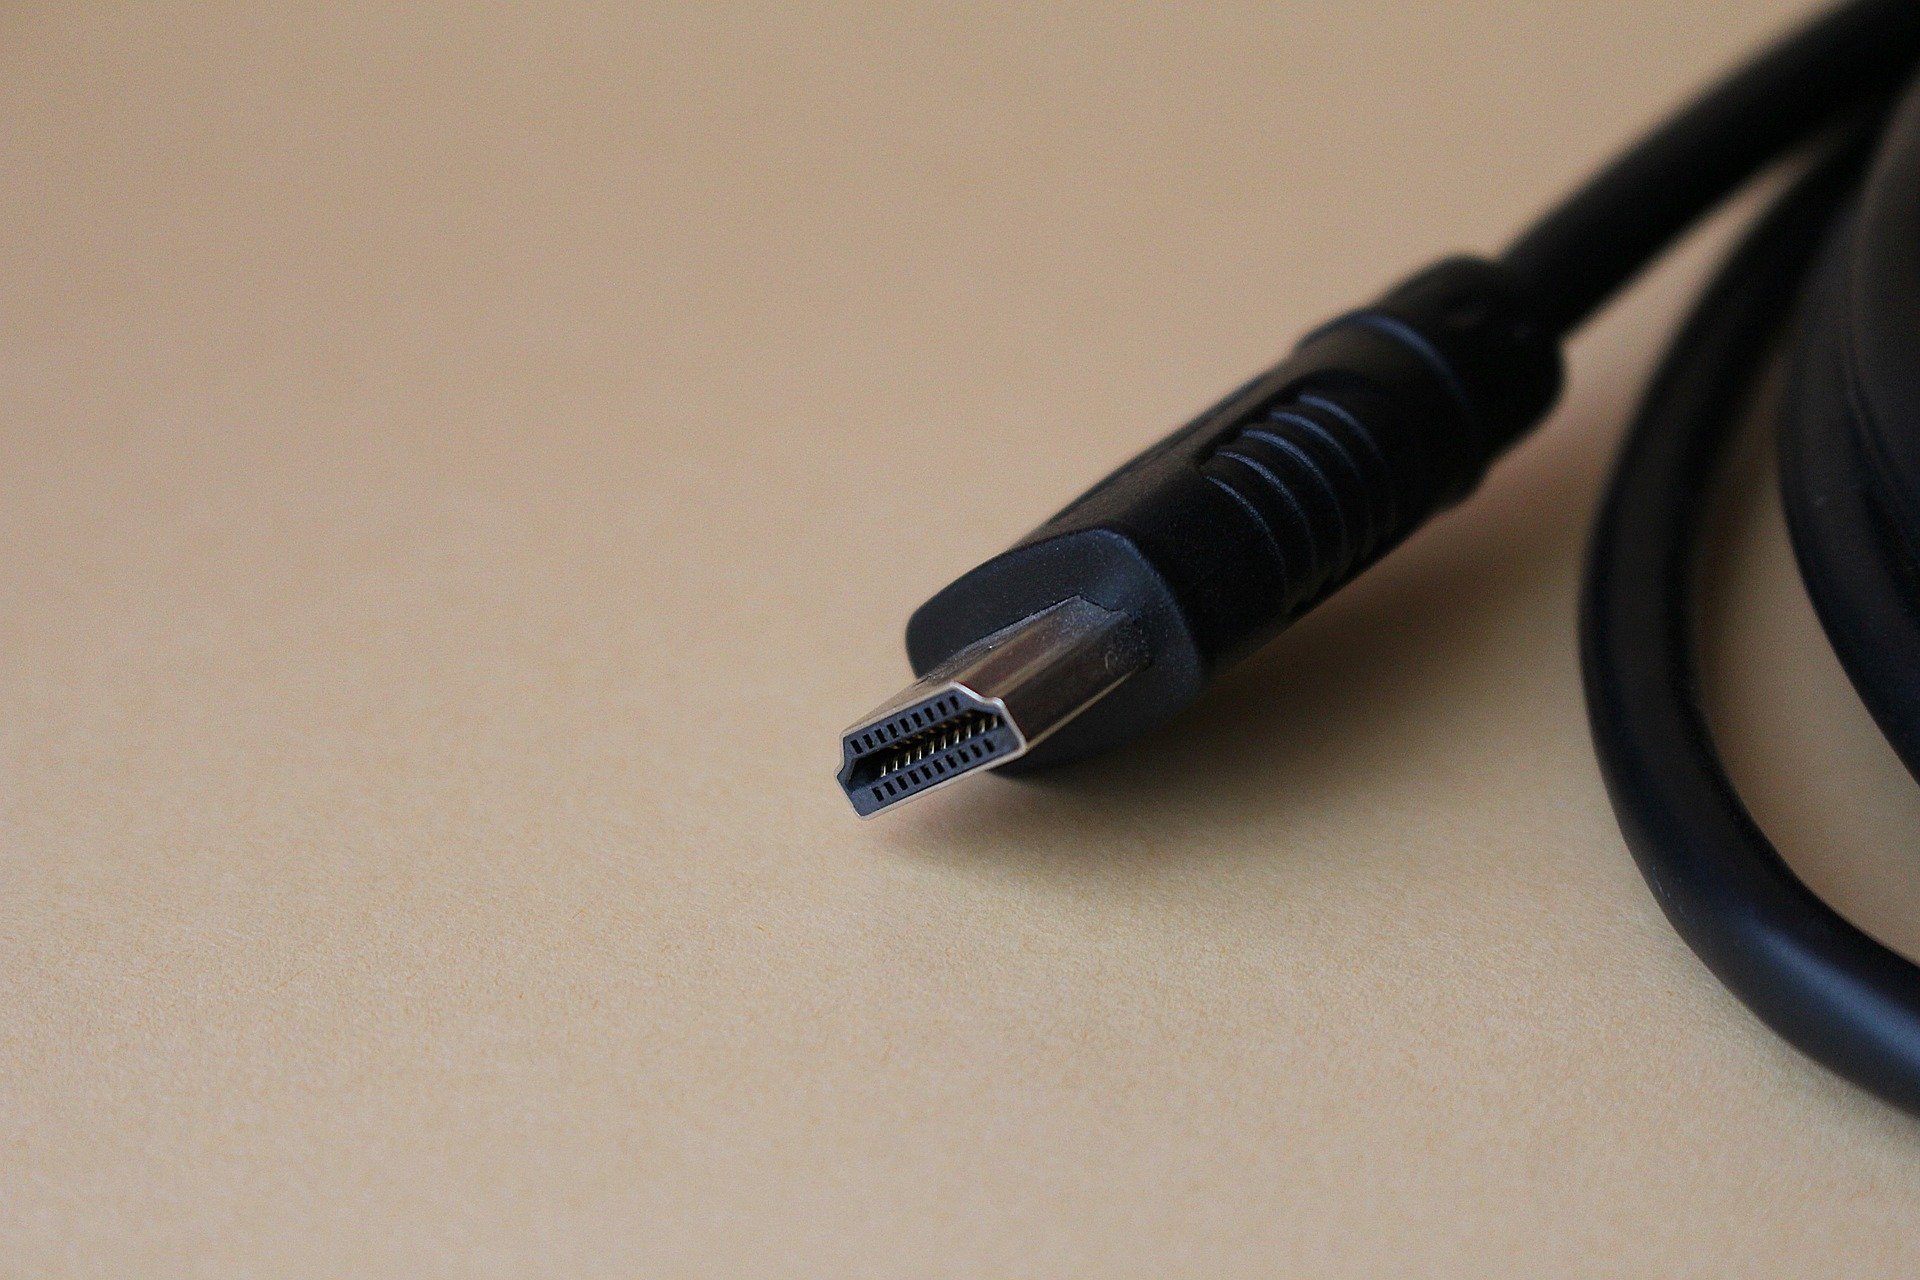 Highspeed HDMI-Kabel: Das sind die Vorteile